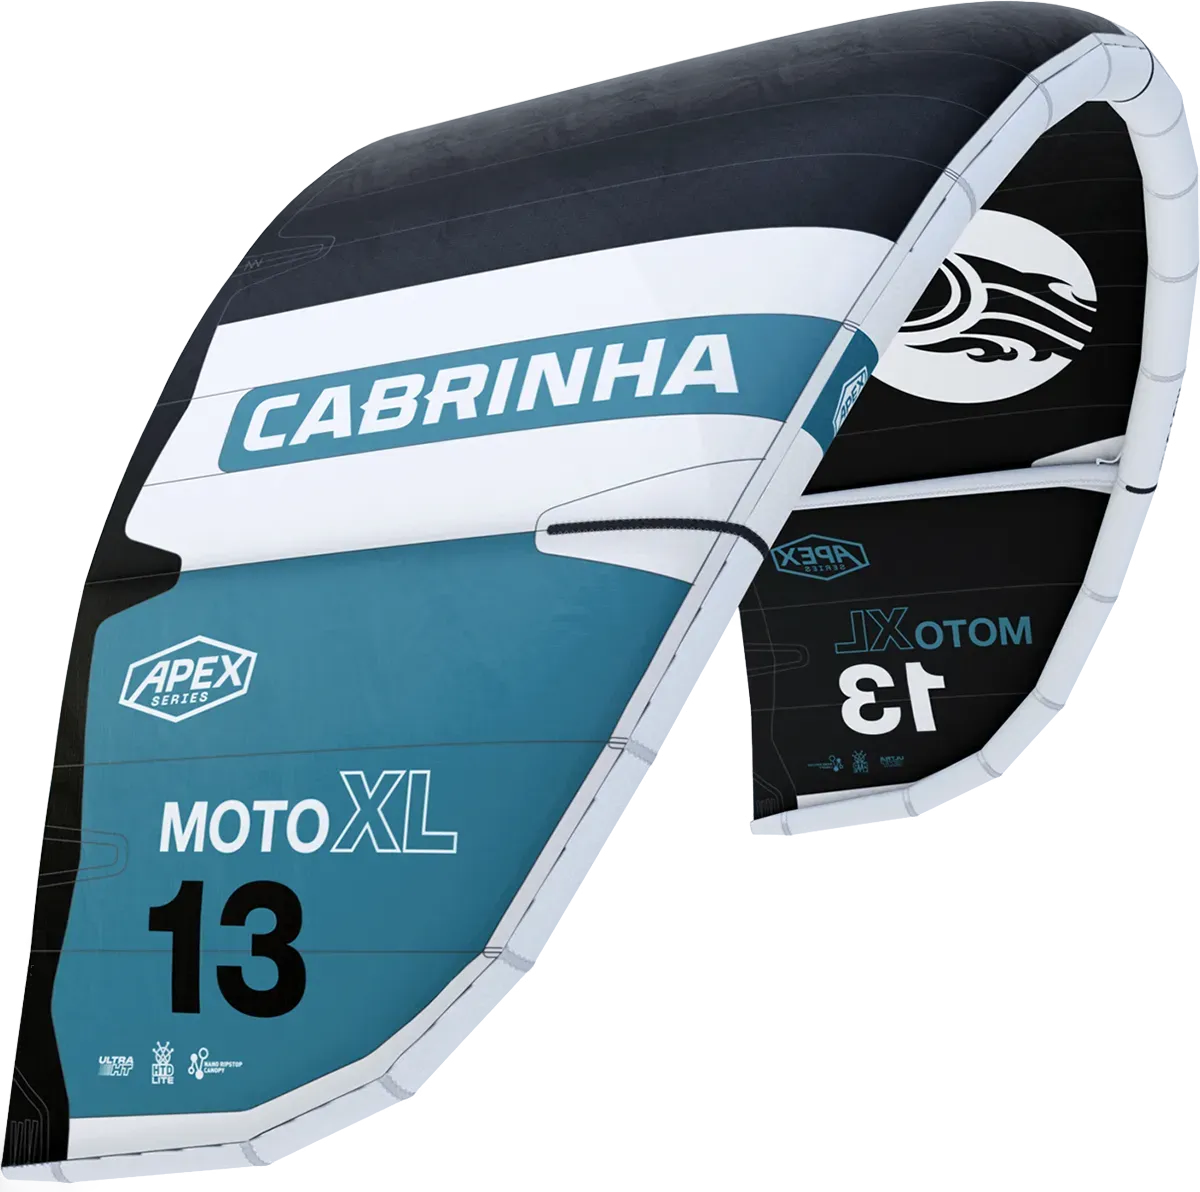 Cabrinha 24 Moto XL Apex only